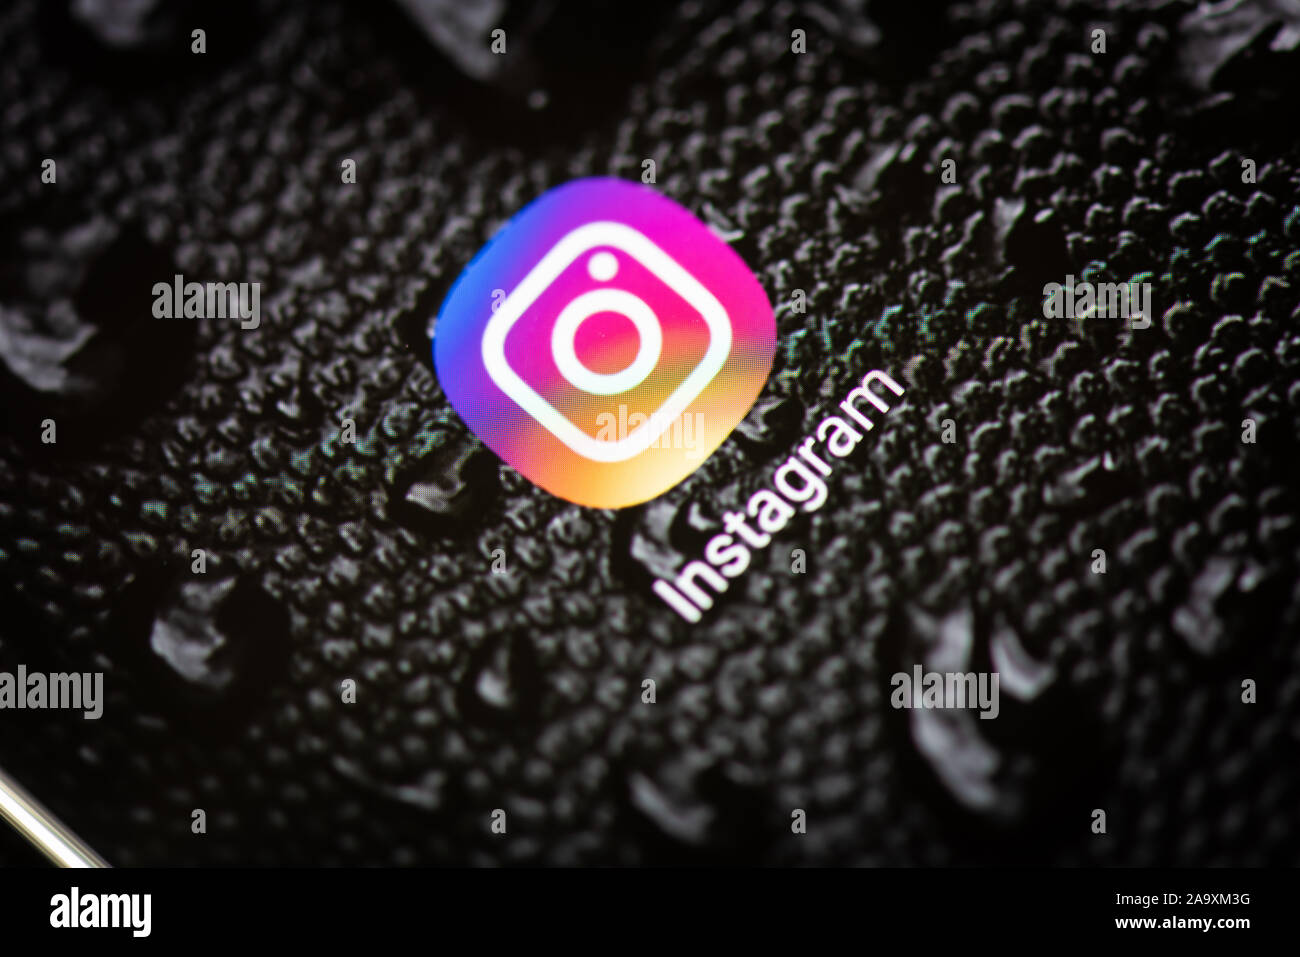 Instagram App trên điện thoại thông minh, thiết bị di động trên nền đen - Instagram Bạn yêu thích chia sẻ cuộc sống của mình với mọi người trên Instagram? Đây là ứng dụng thích hợp cho những người đam mê chụp ảnh và đăng tải trên mạng xã hội. Với giao diện đơn giản và dễ sử dụng, bạn có thể chia sẻ những khoảnh khắc đẹp nhất của mình với mọi người.